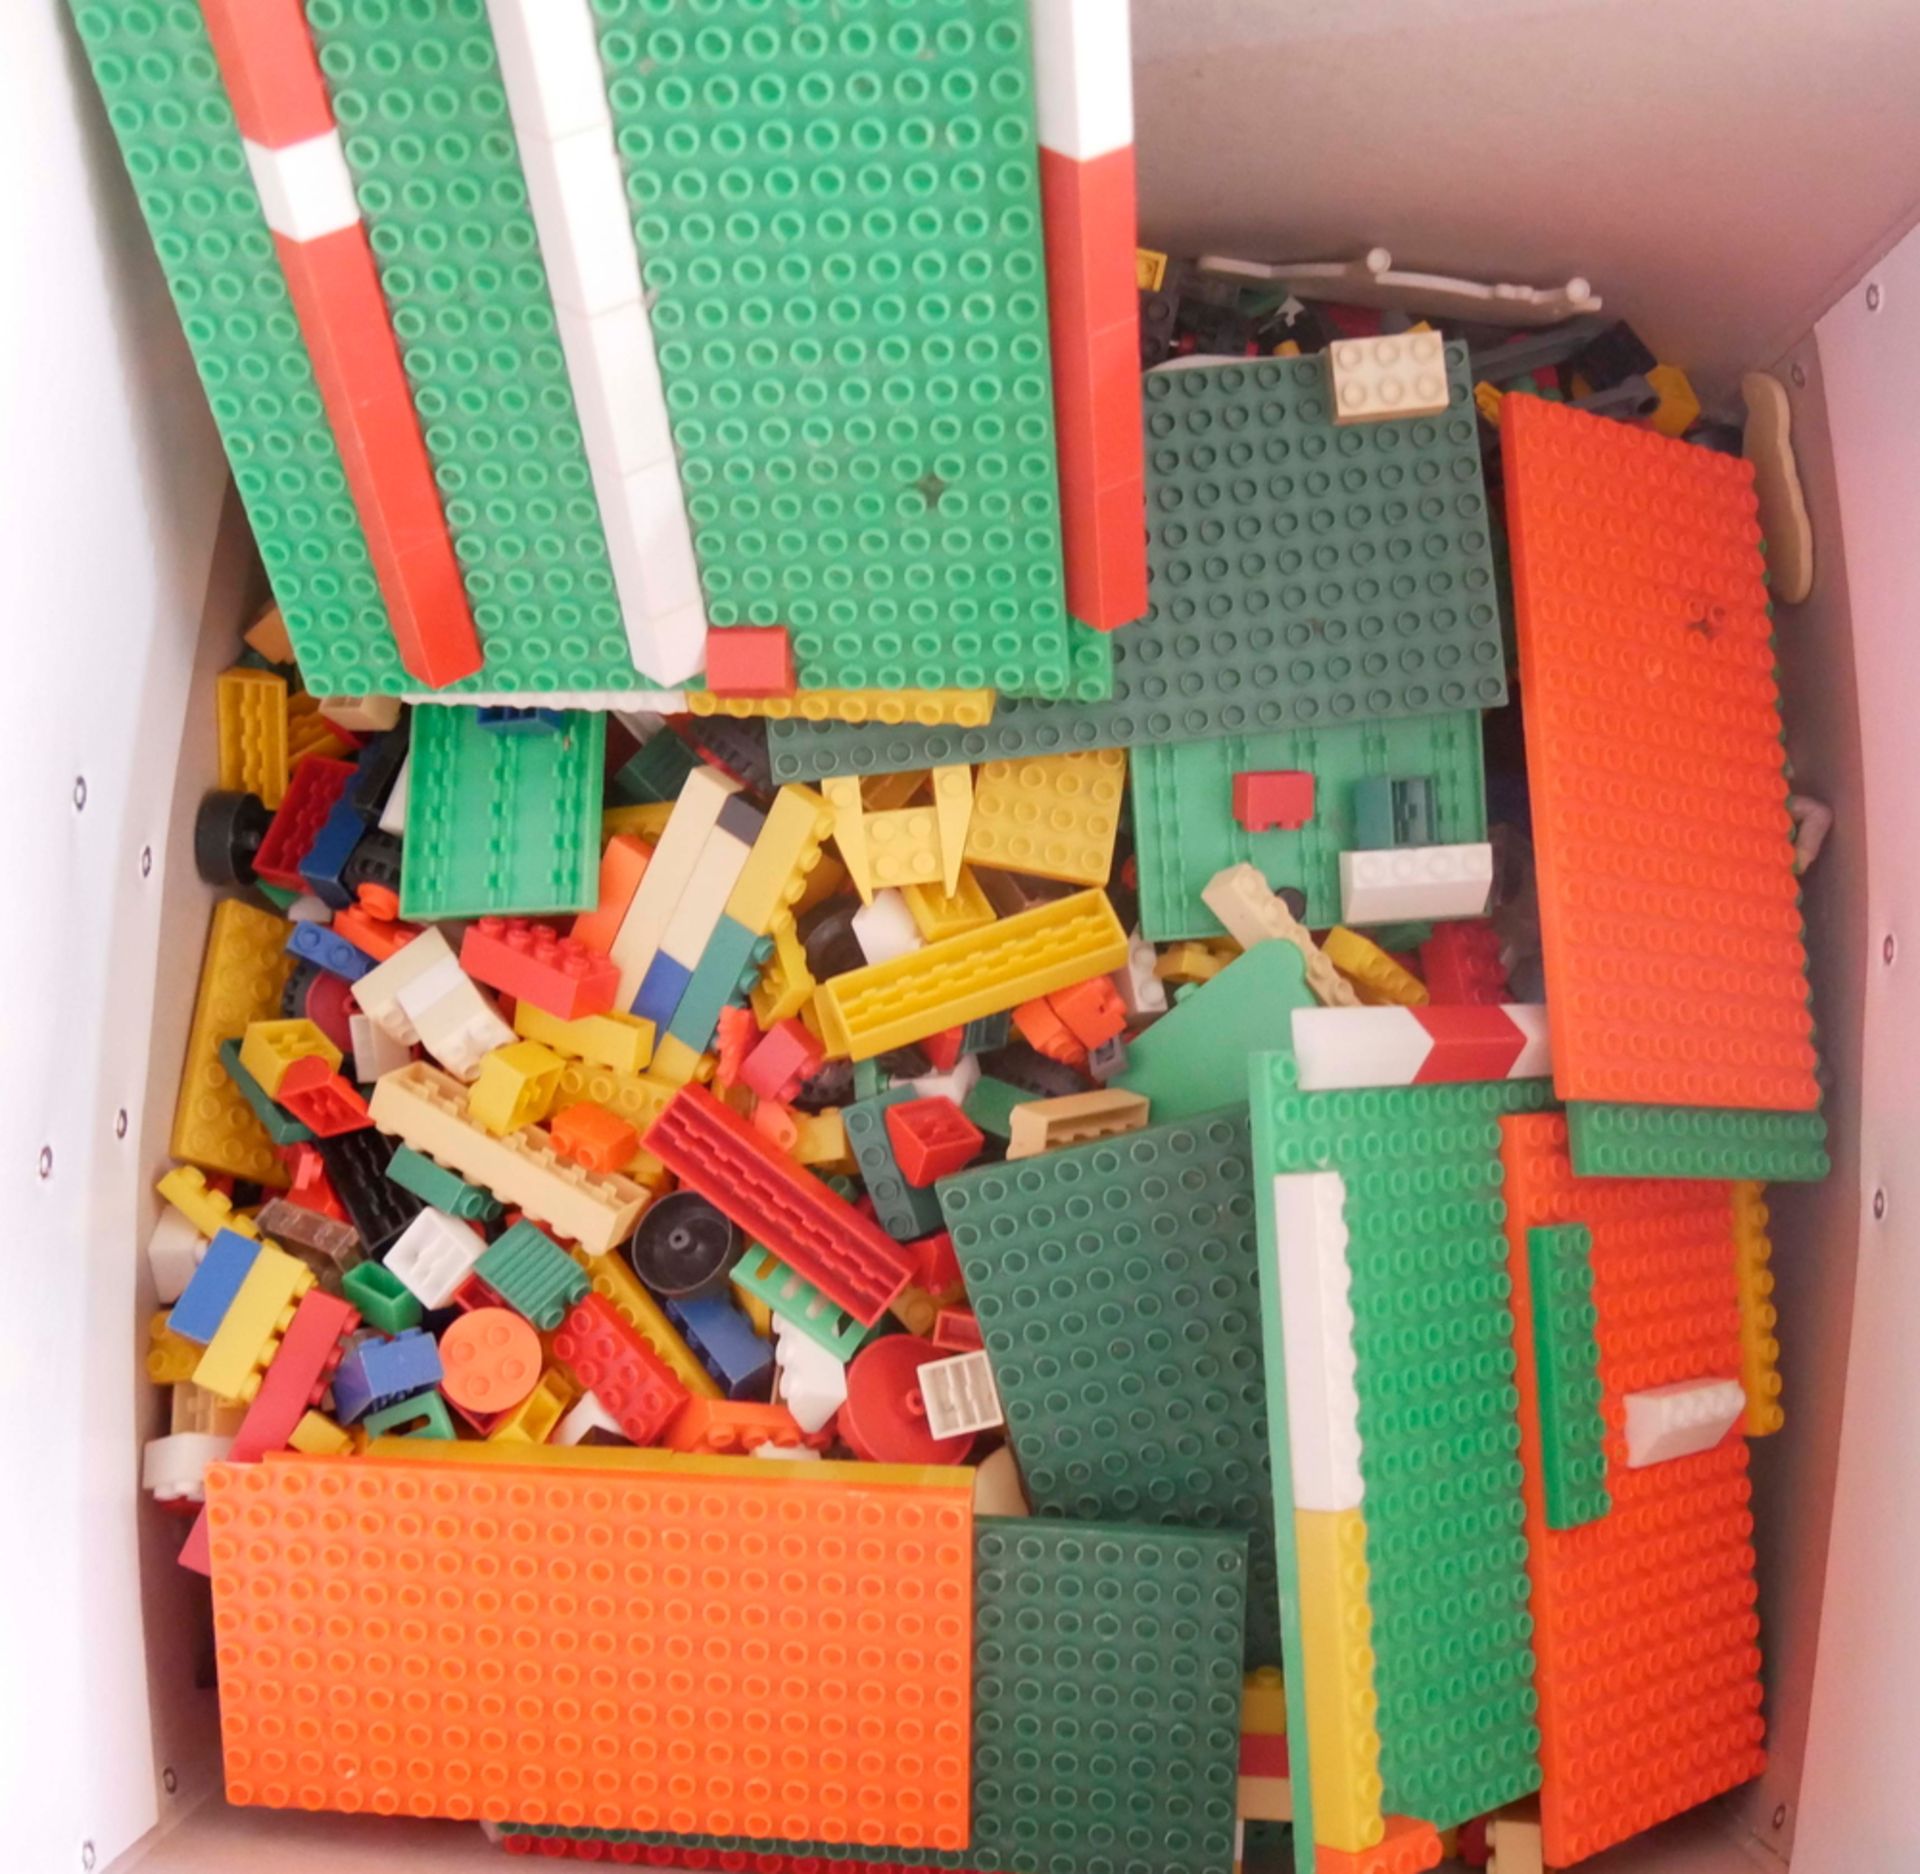 Lot DDR (Lego) Pebe - Spielsteine, etc. aus Auflösung. Für den DDR Nostalgiger